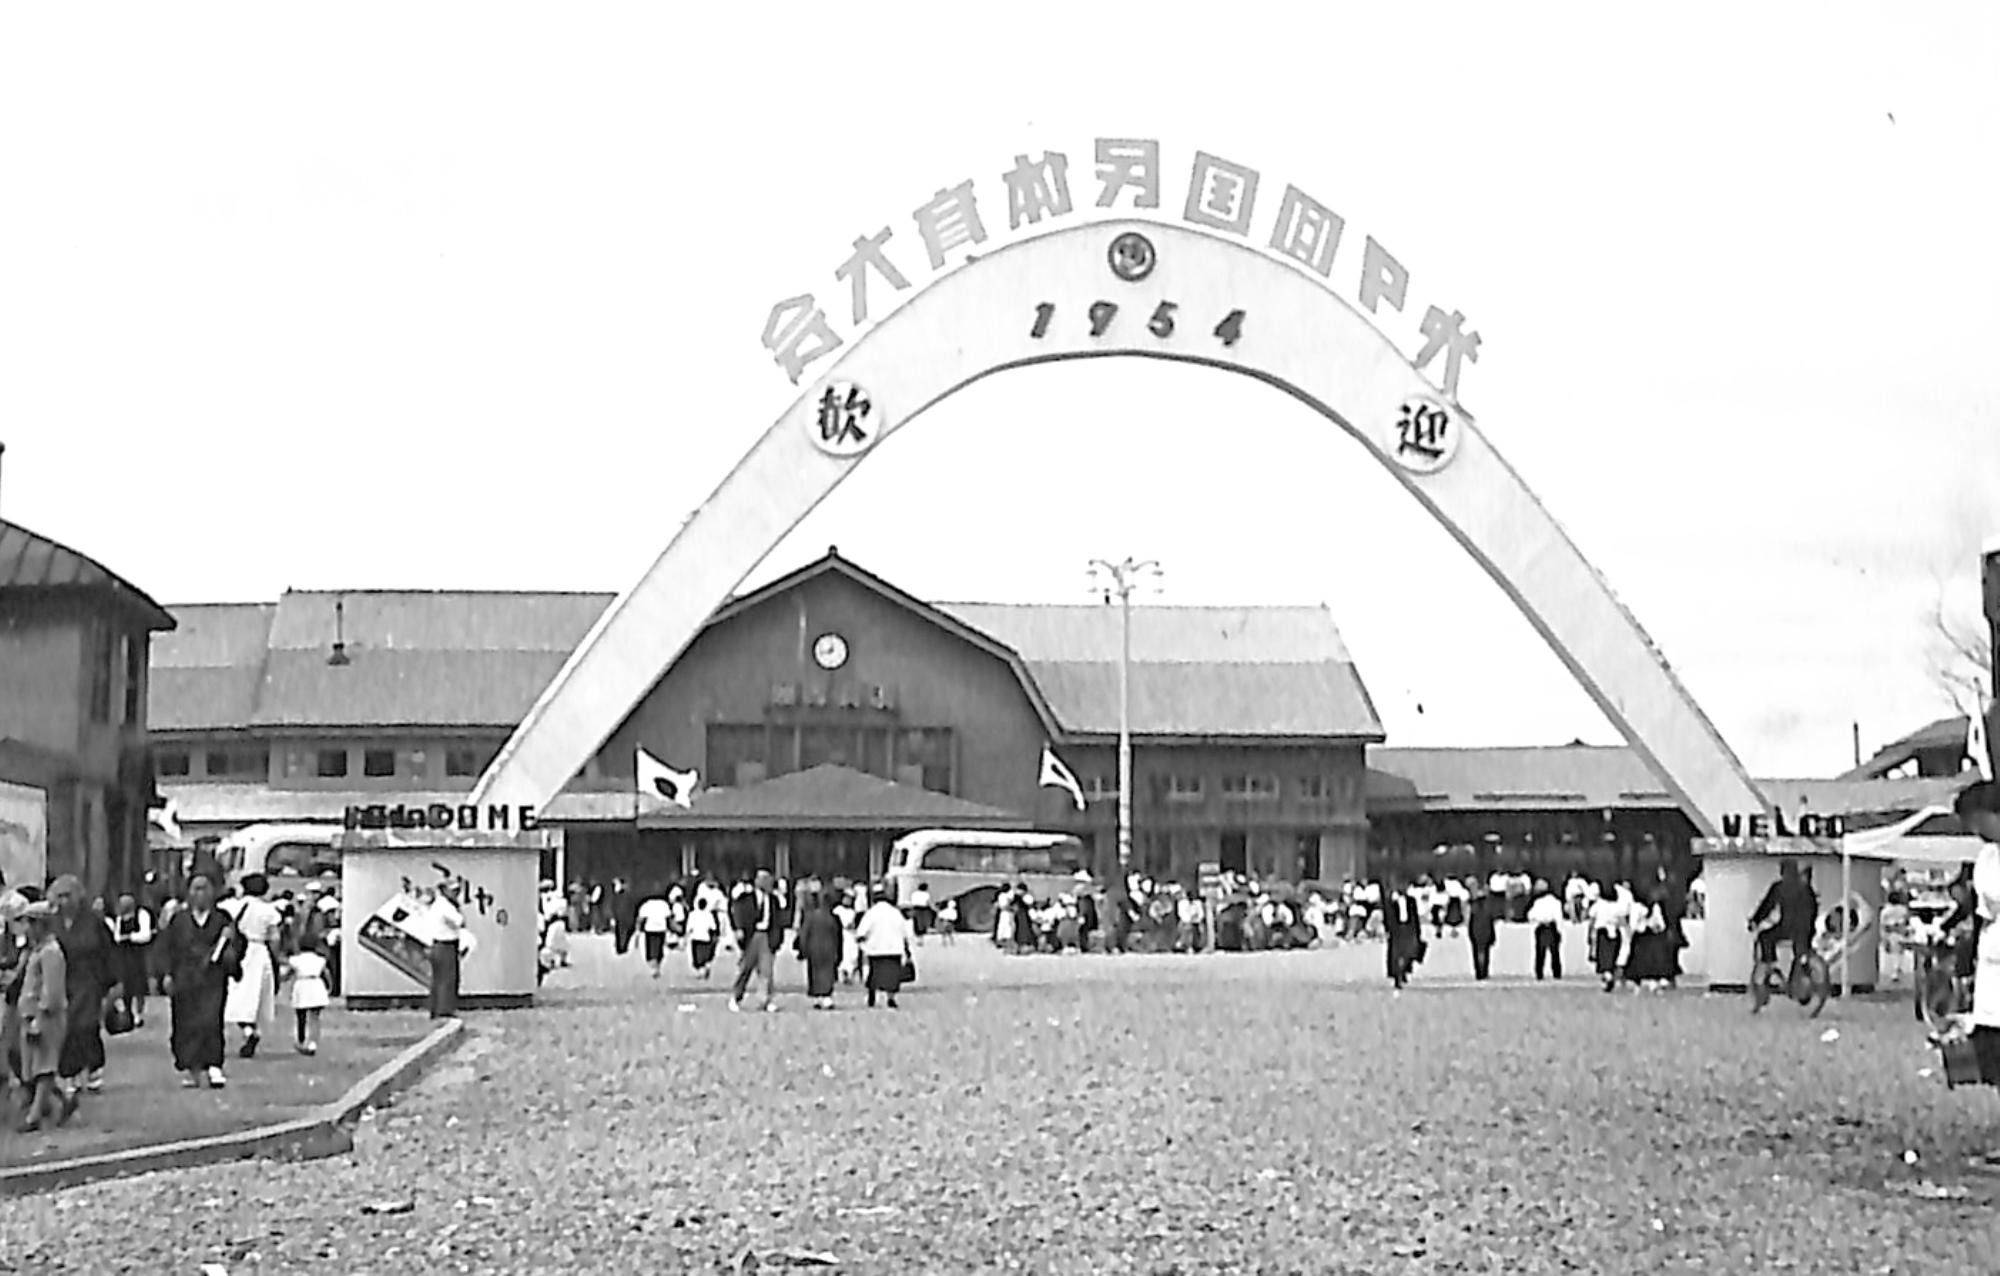 第9回国民体育大会の開催を関係する歓迎するゲートが設置され、多くの人が行き交う昭和29年の岩見沢駅前のモノクロ写真